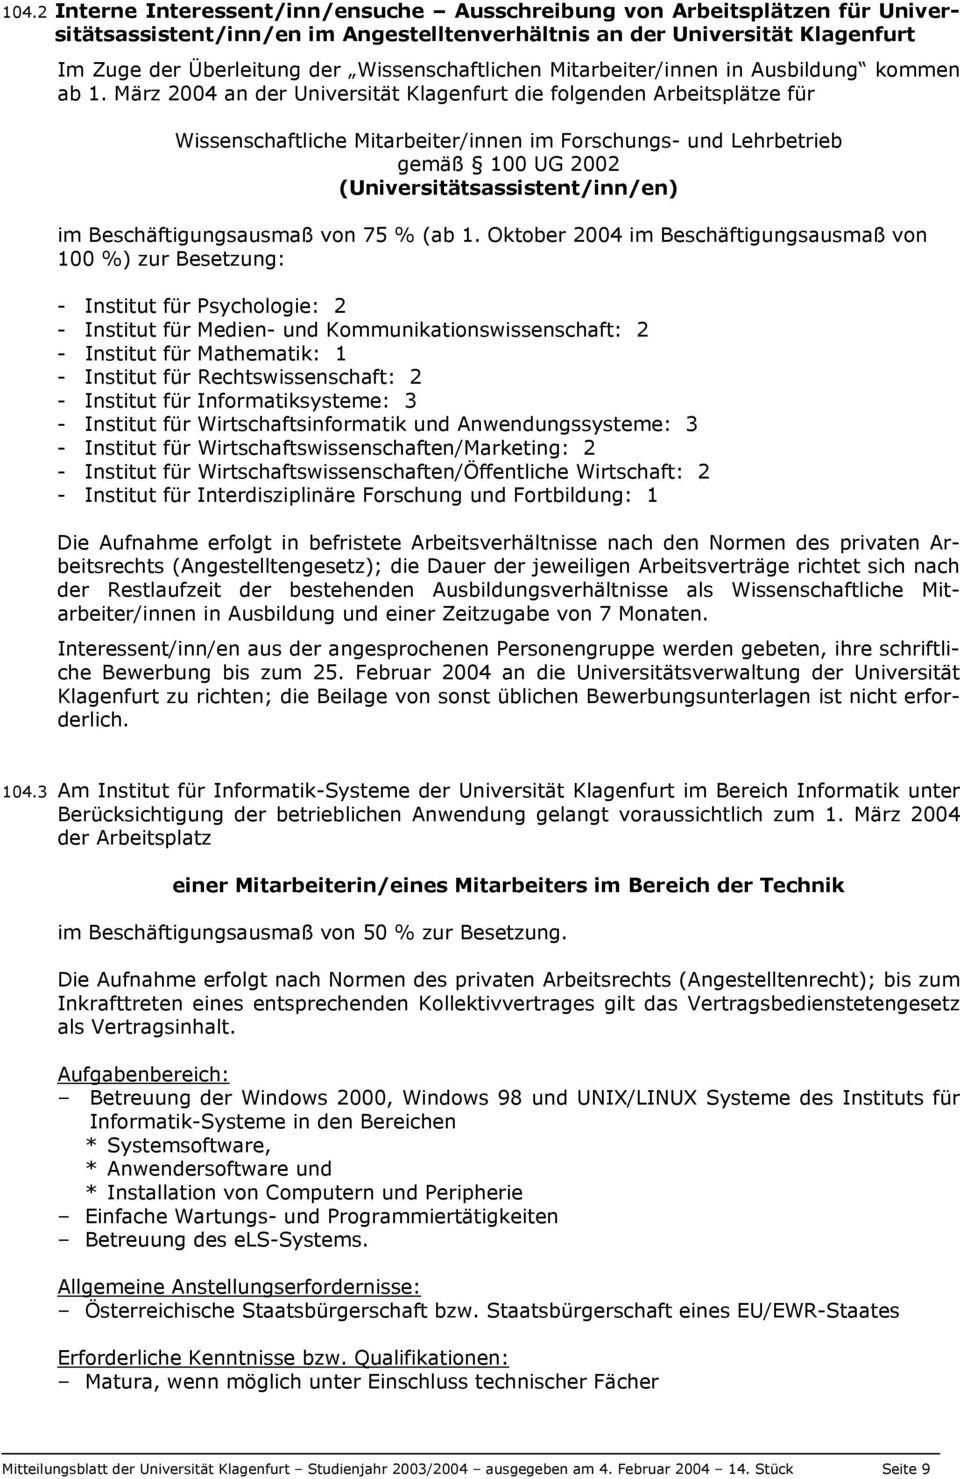 März 2004 an der Universität Klagenfurt die folgenden Arbeitsplätze für Wissenschaftliche Mitarbeiter/innen im Forschungs- und Lehrbetrieb gemäß 100 UG 2002 (Universitätsassistent/inn/en) im